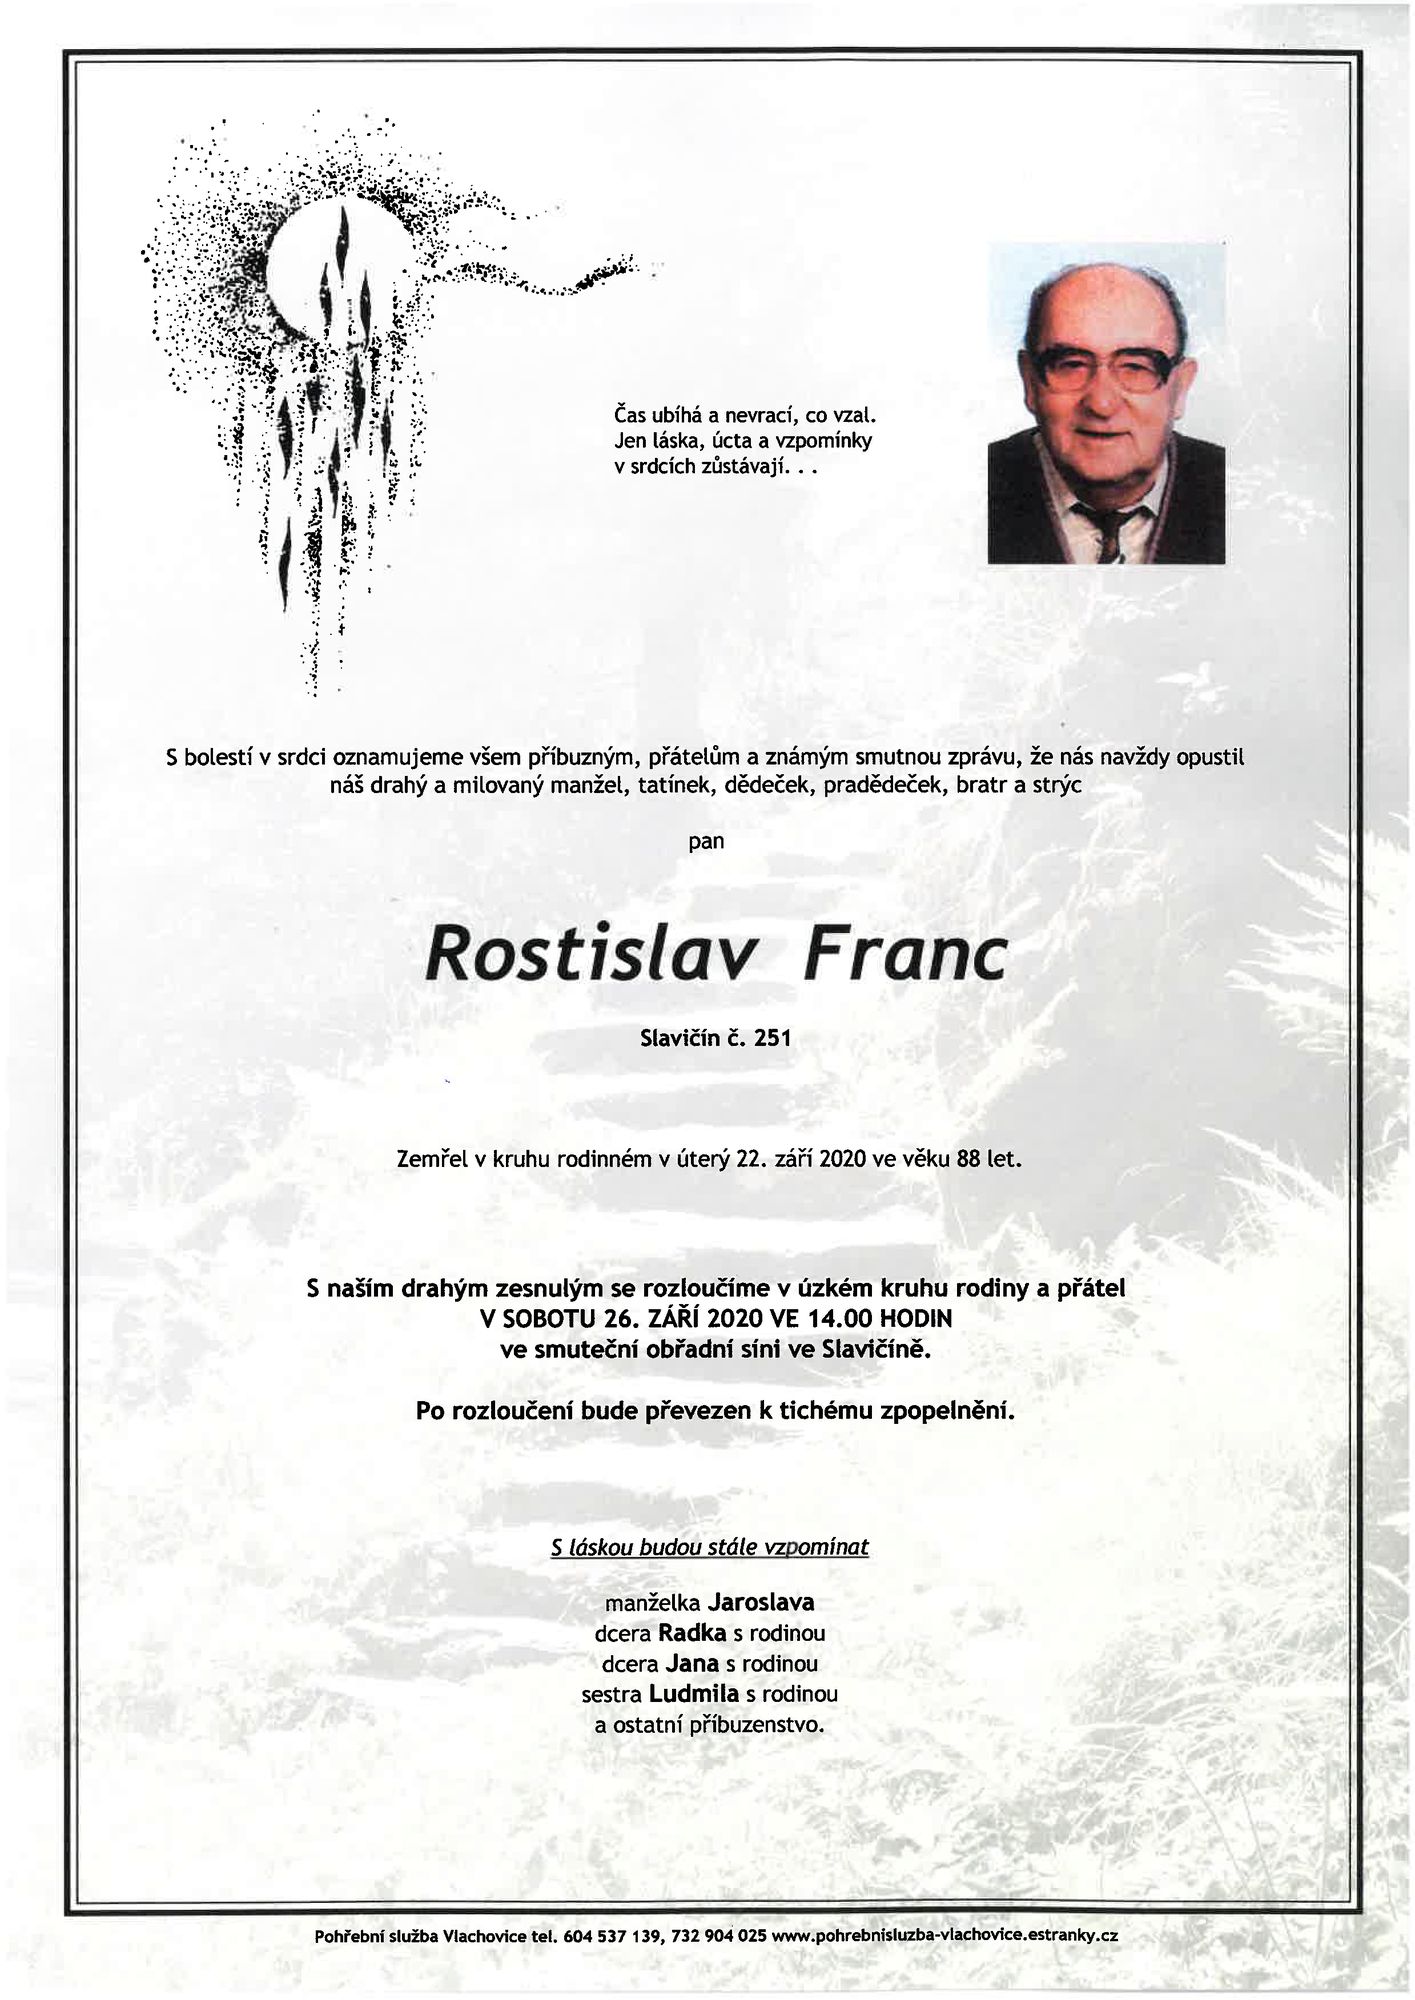 Rostislav Franc